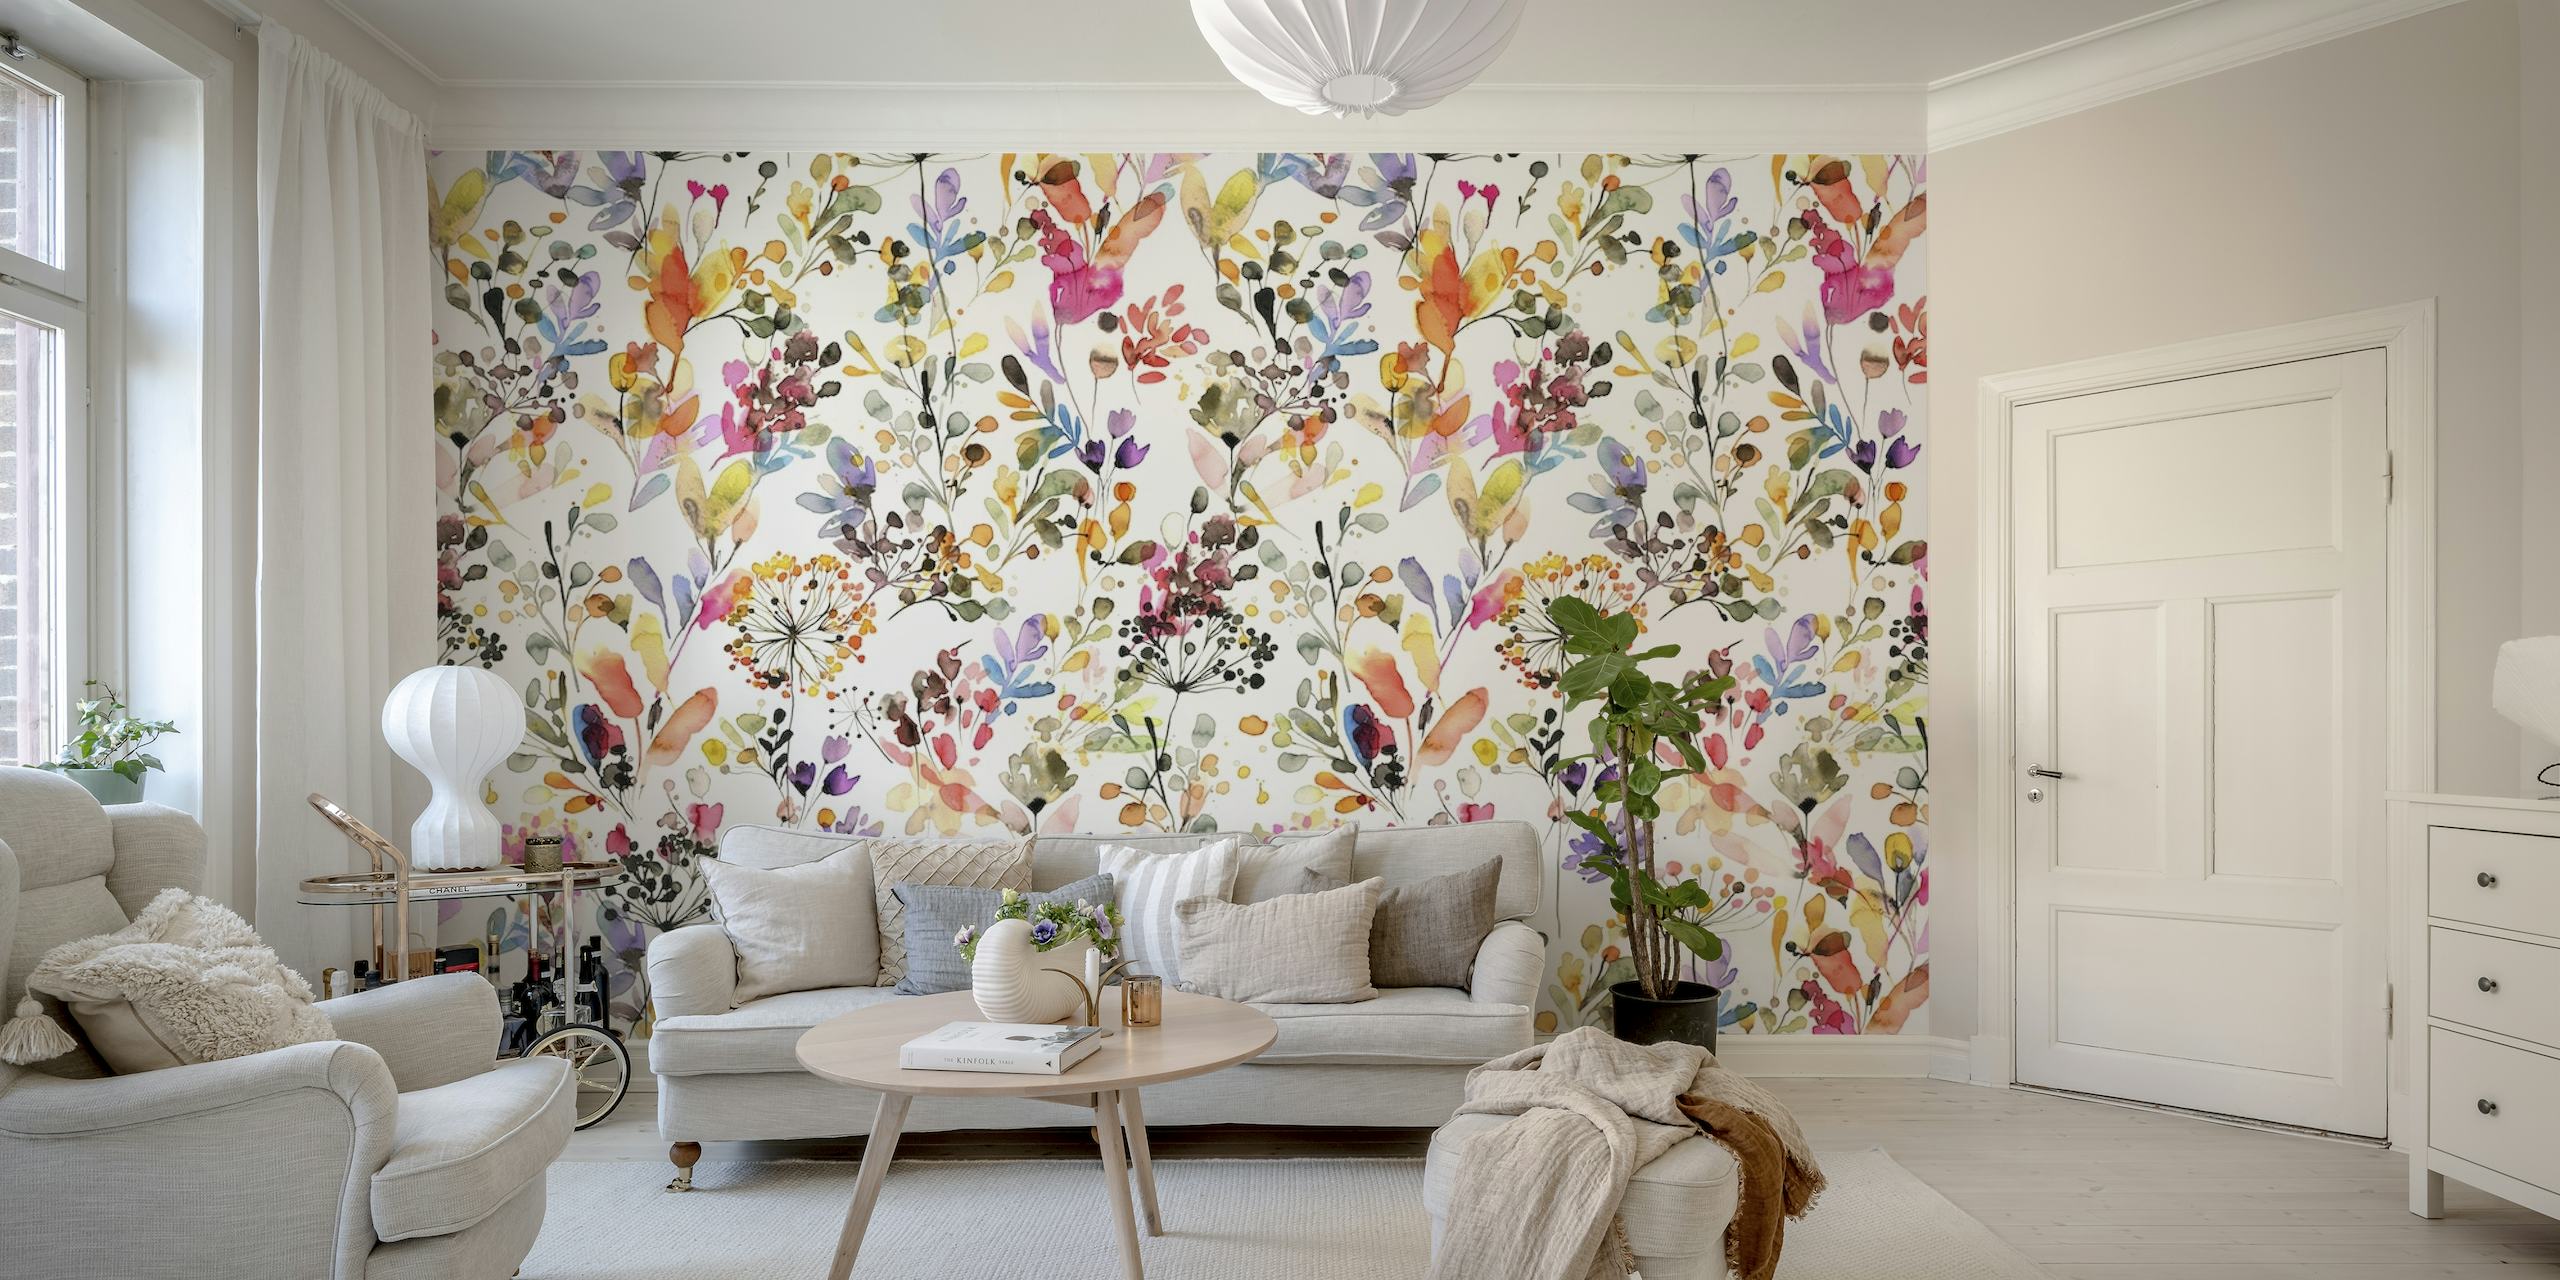 Botanisches Wandbild mit einem Muster aus wilden Gräsern und bunten Blumen auf neutralem Hintergrund